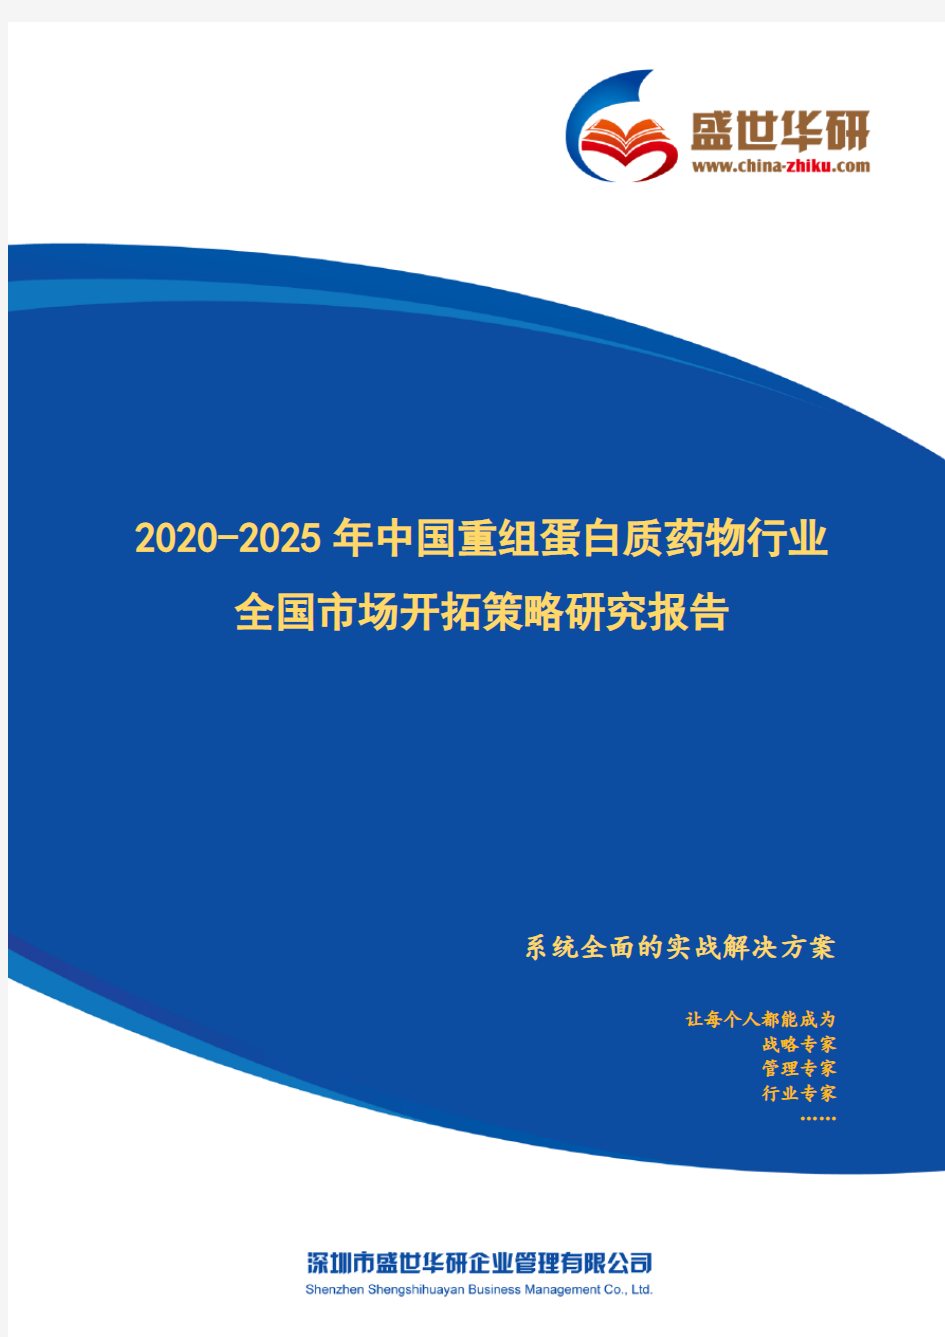 【完整版】2020-2025年中国重组蛋白质药物行业全国市场开拓策略研究报告